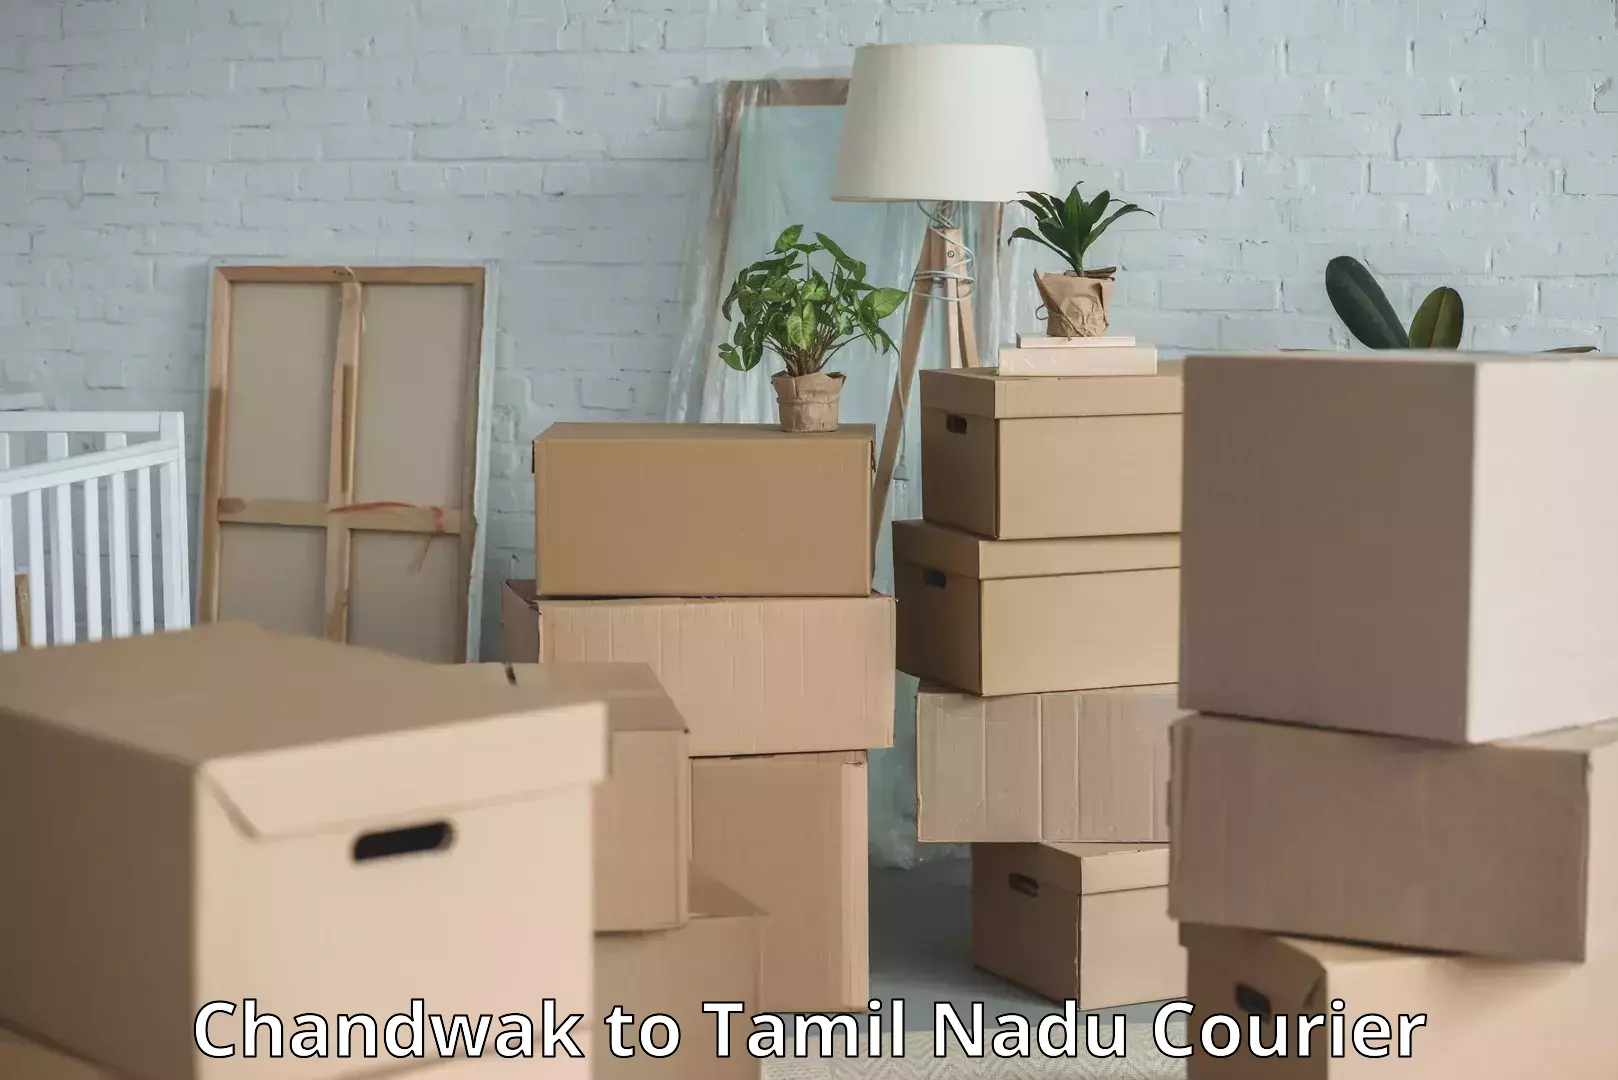 Luggage shipment specialists Chandwak to Tamil Nadu